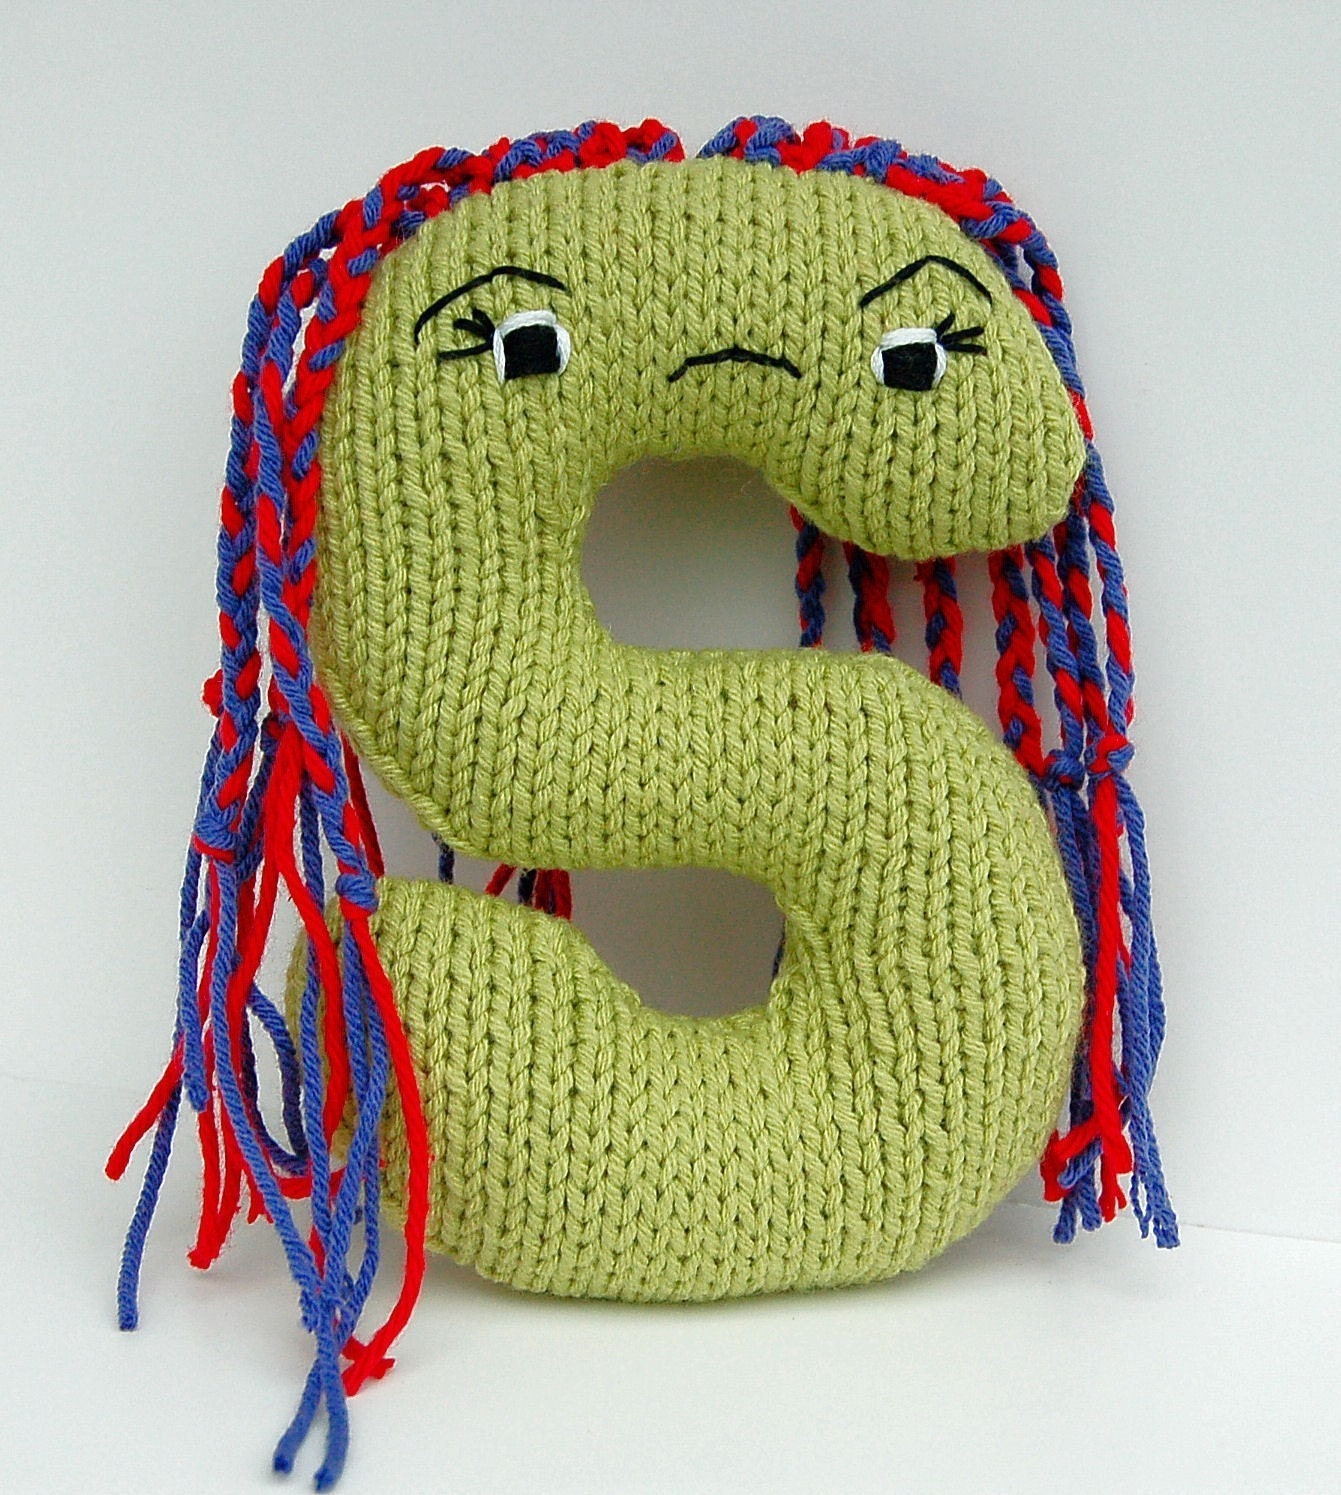 Letter S Alphabet Stuffed Toy Knitting PATTERN by KnitKnoodler